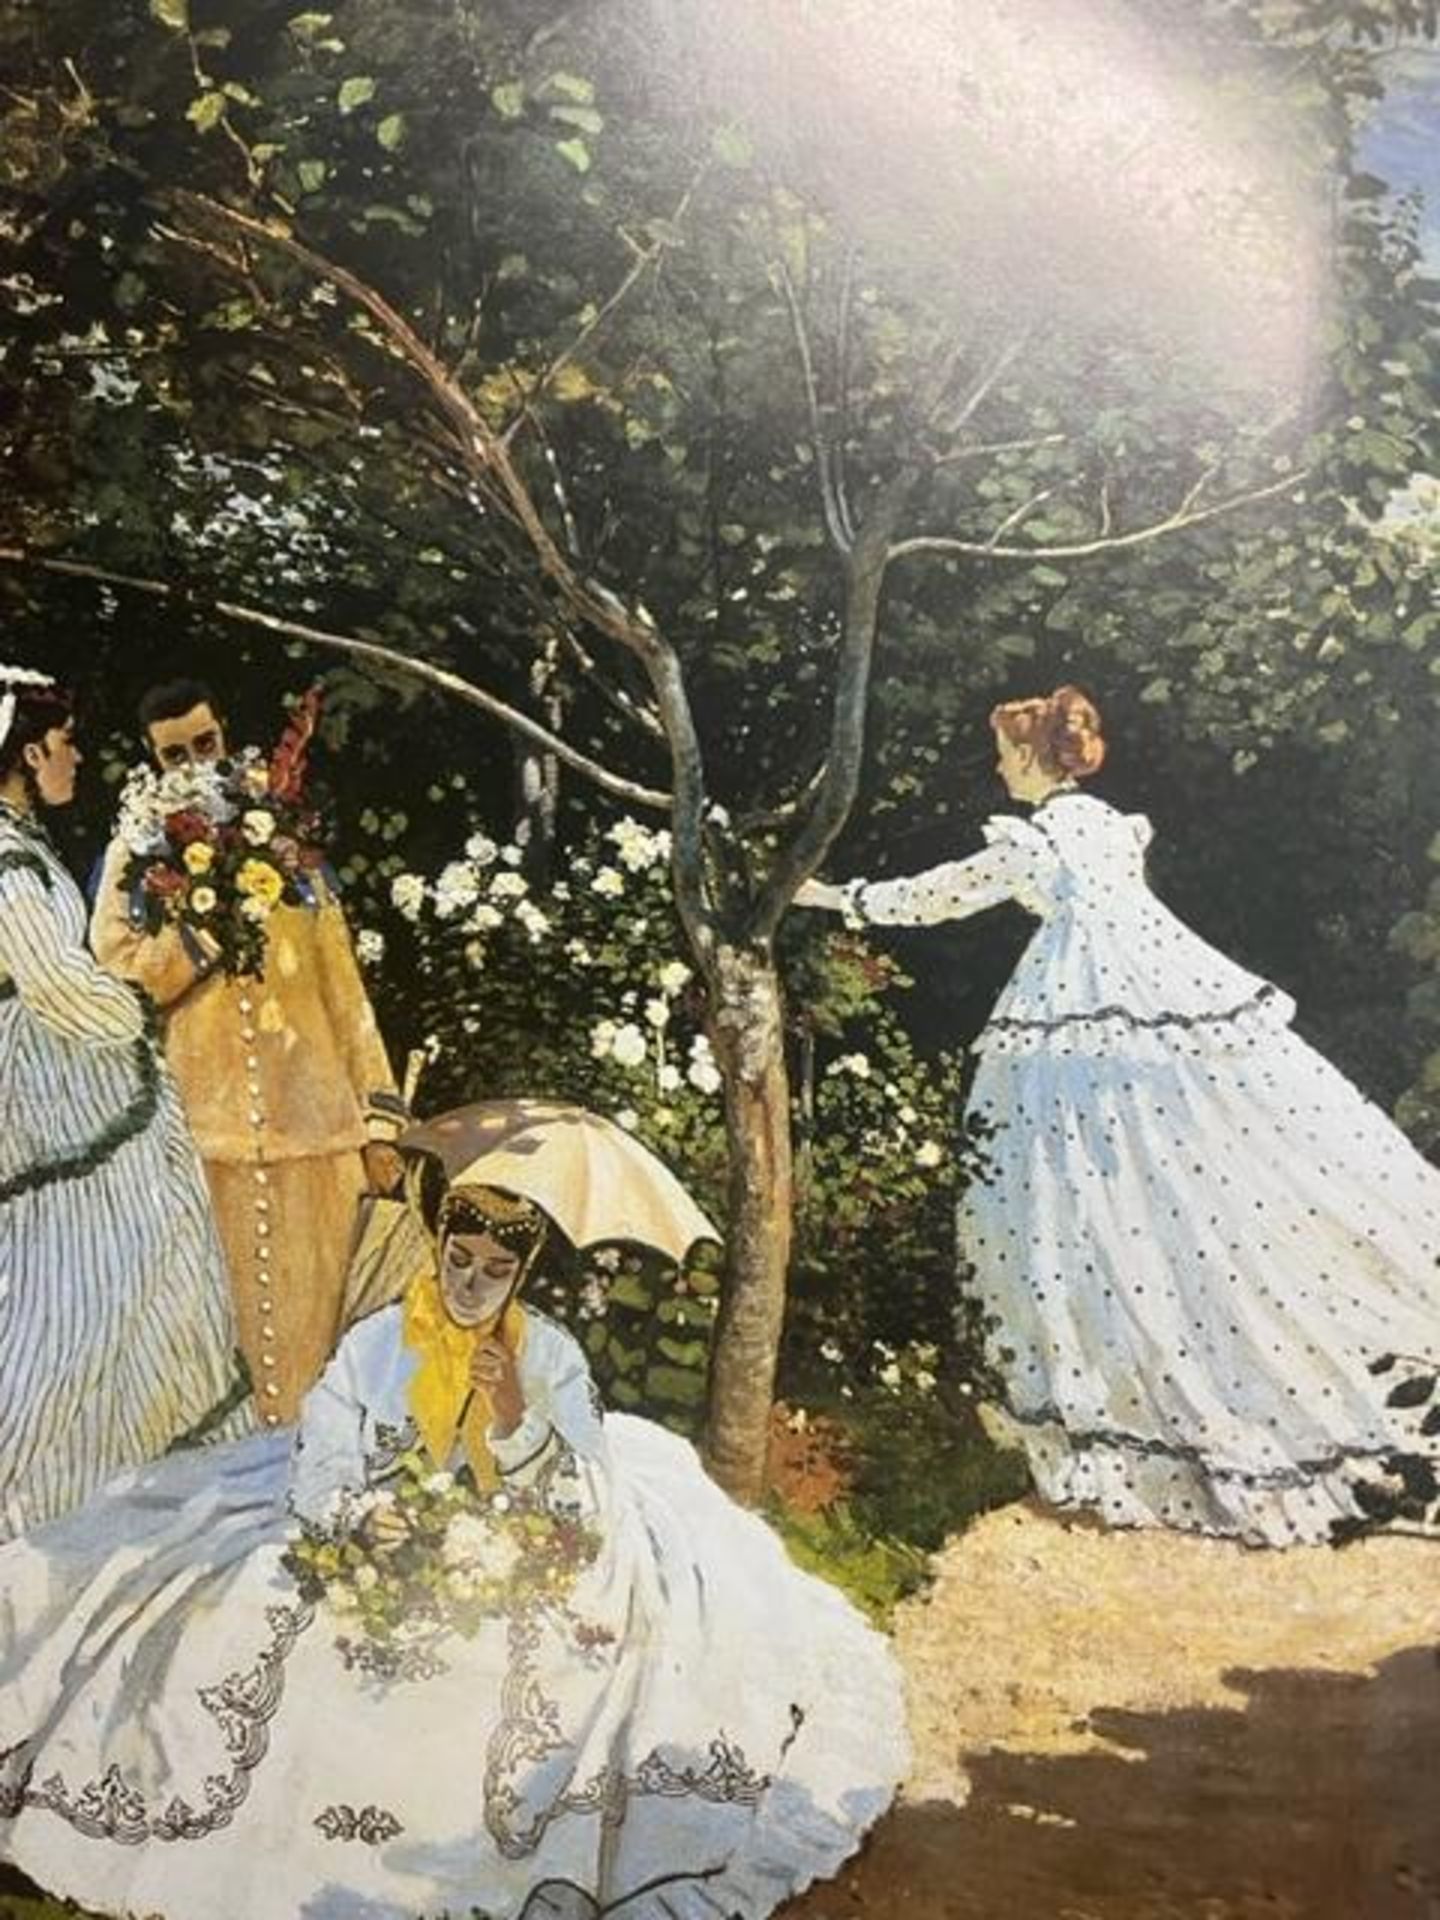 Claude Monet "Ladies in the Garden" Print.